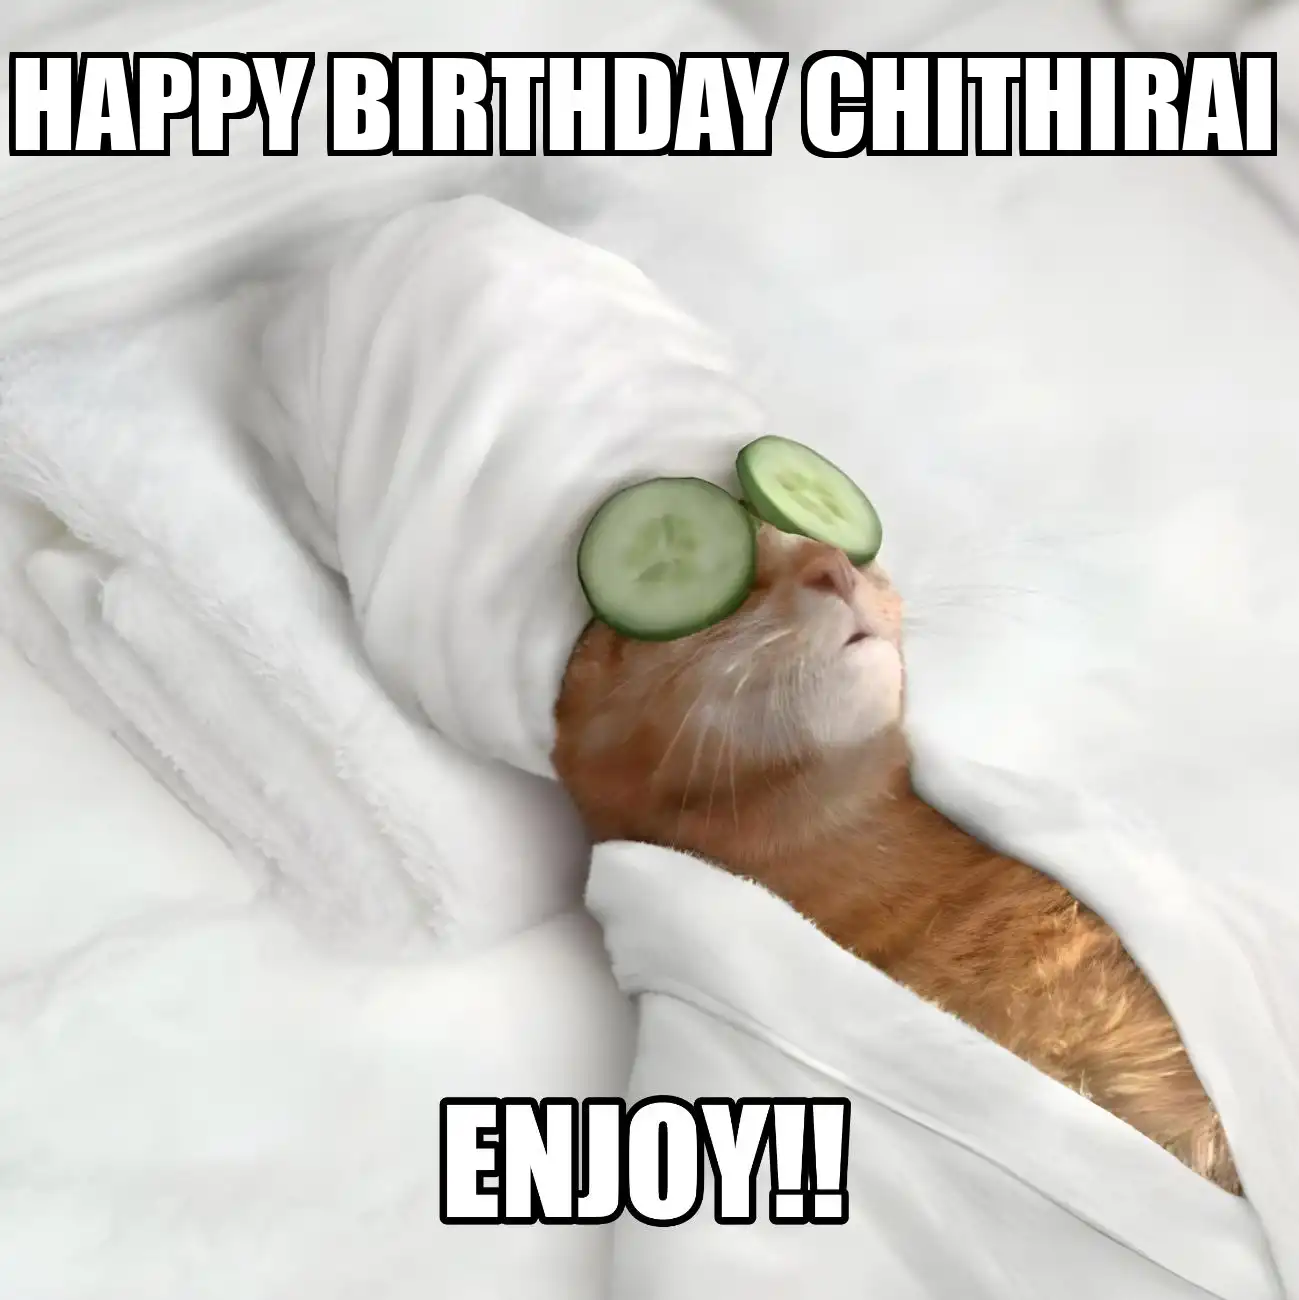 Happy Birthday Chithirai Enjoy Cat Meme